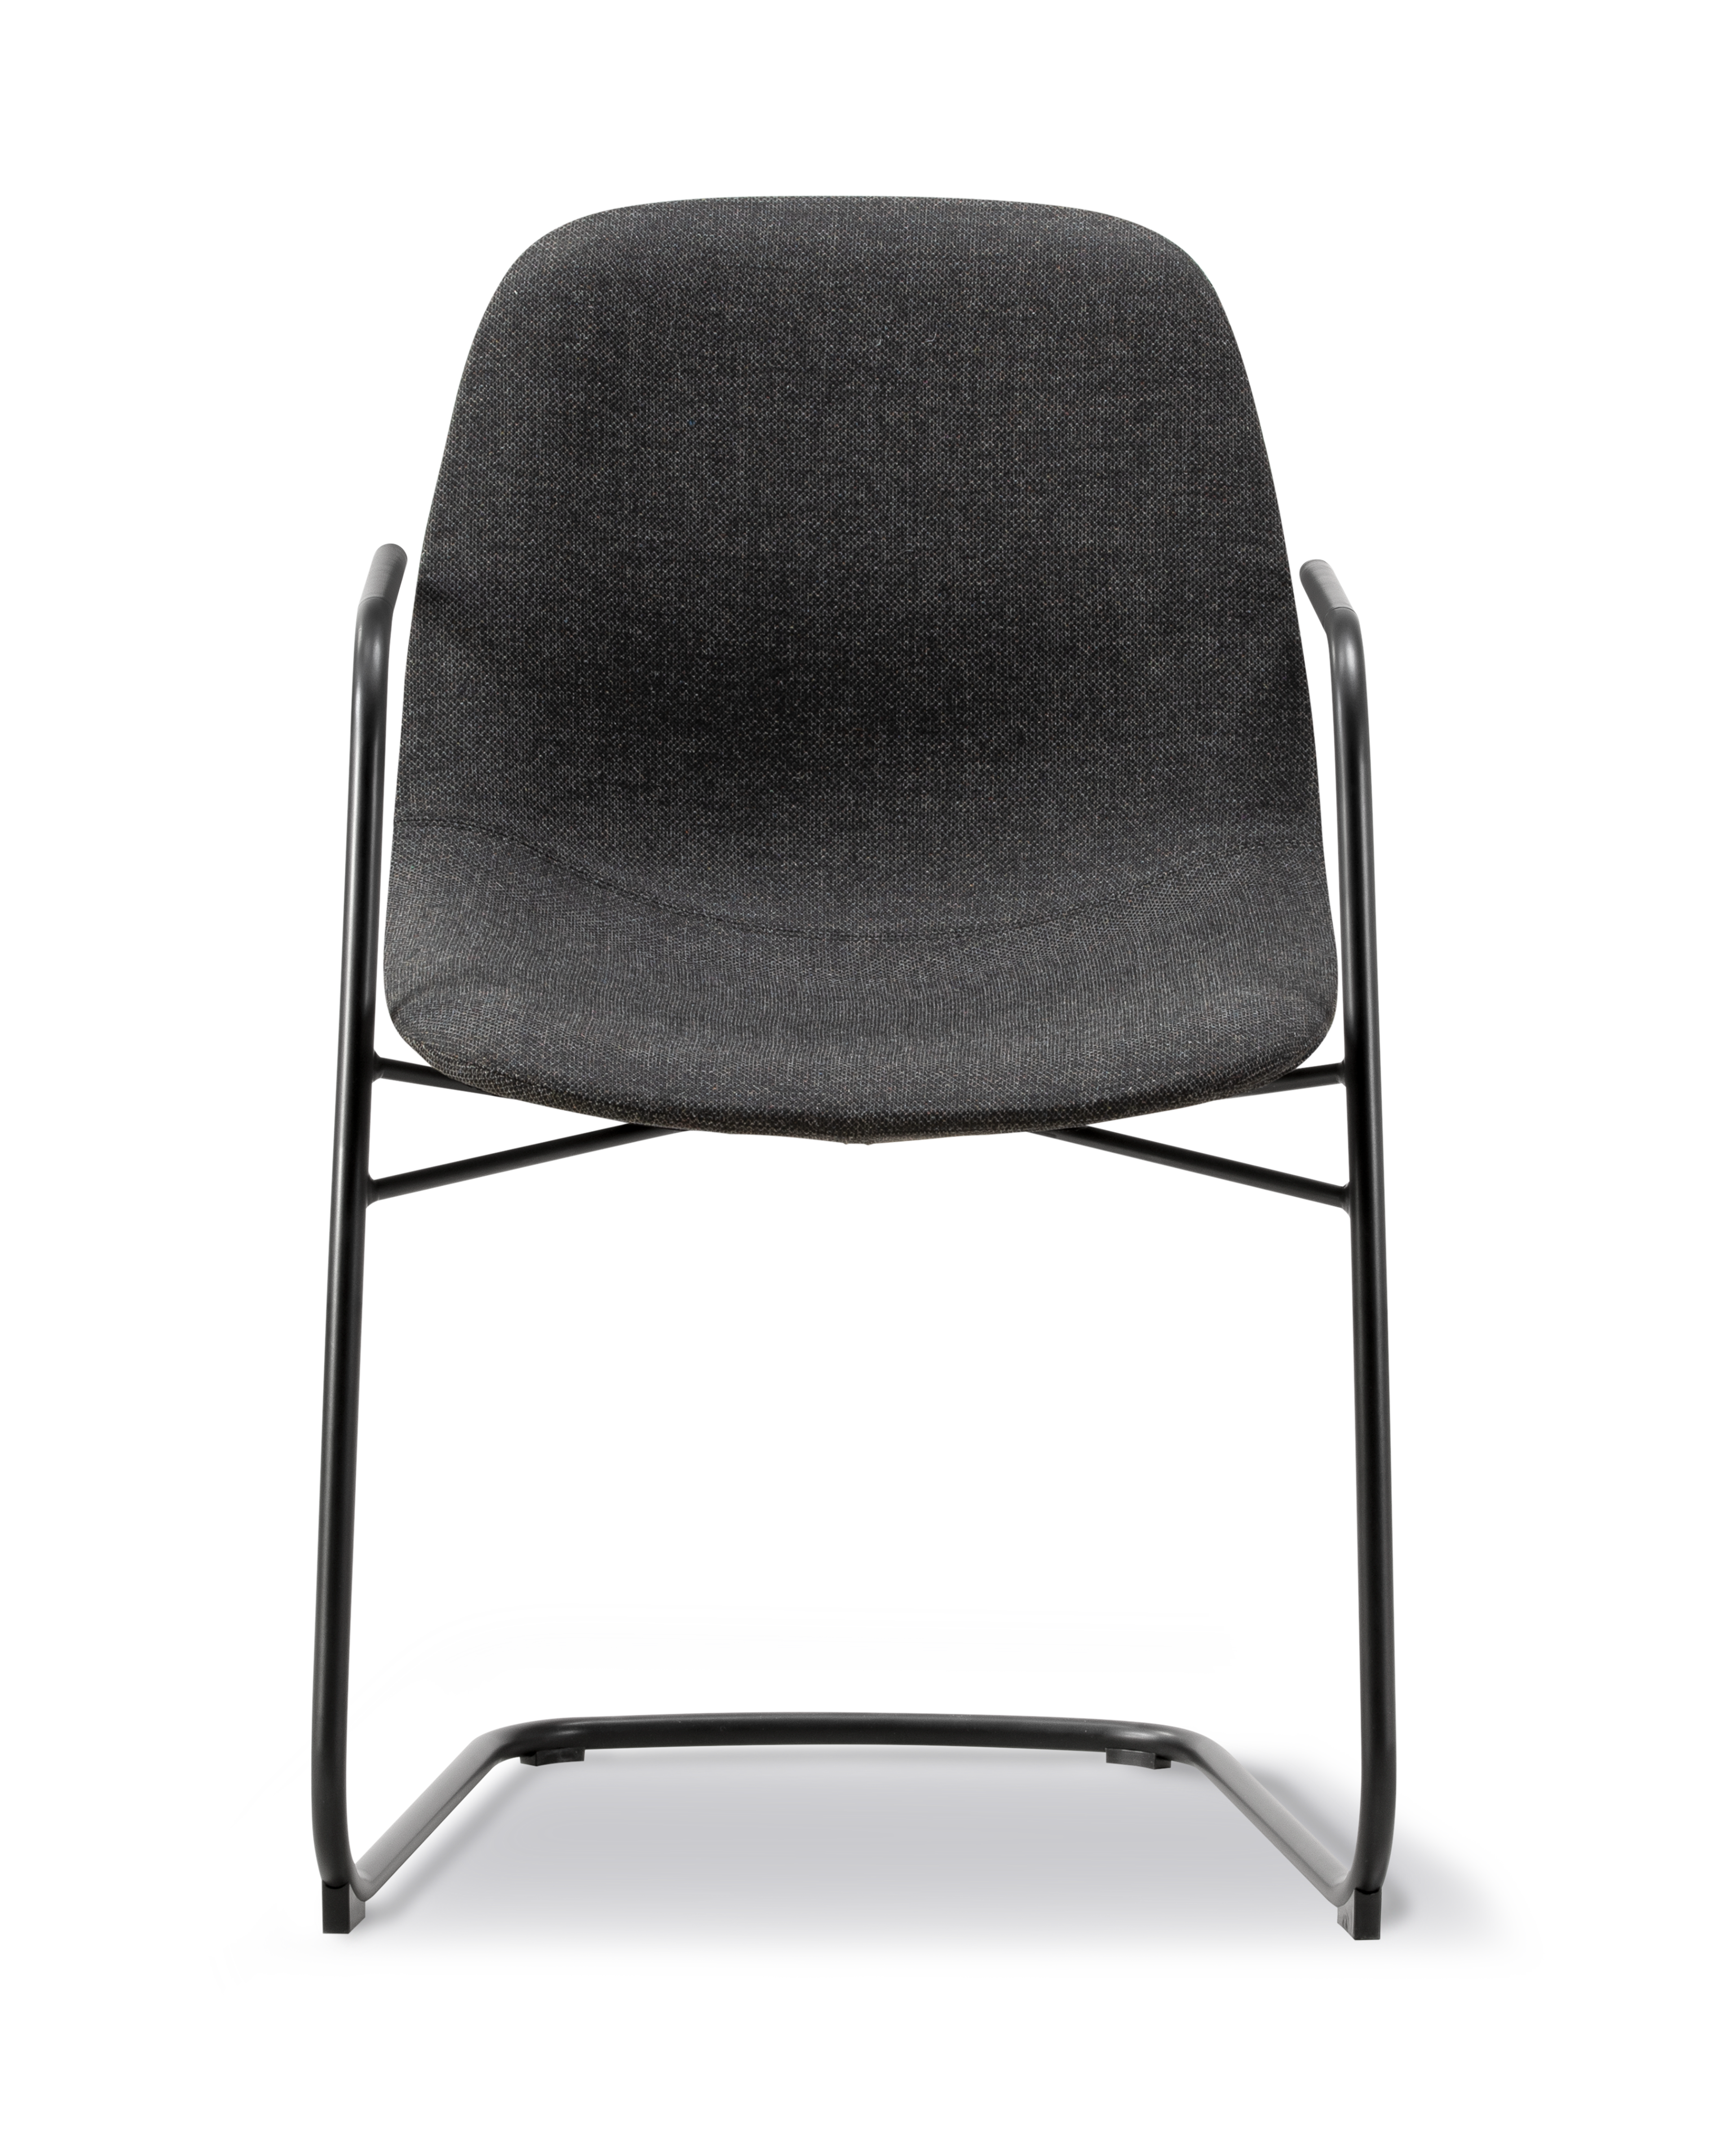 Eyes Cantilever Chair - Re-Wool 198 / Læderkeder 98 Max / Sort stål